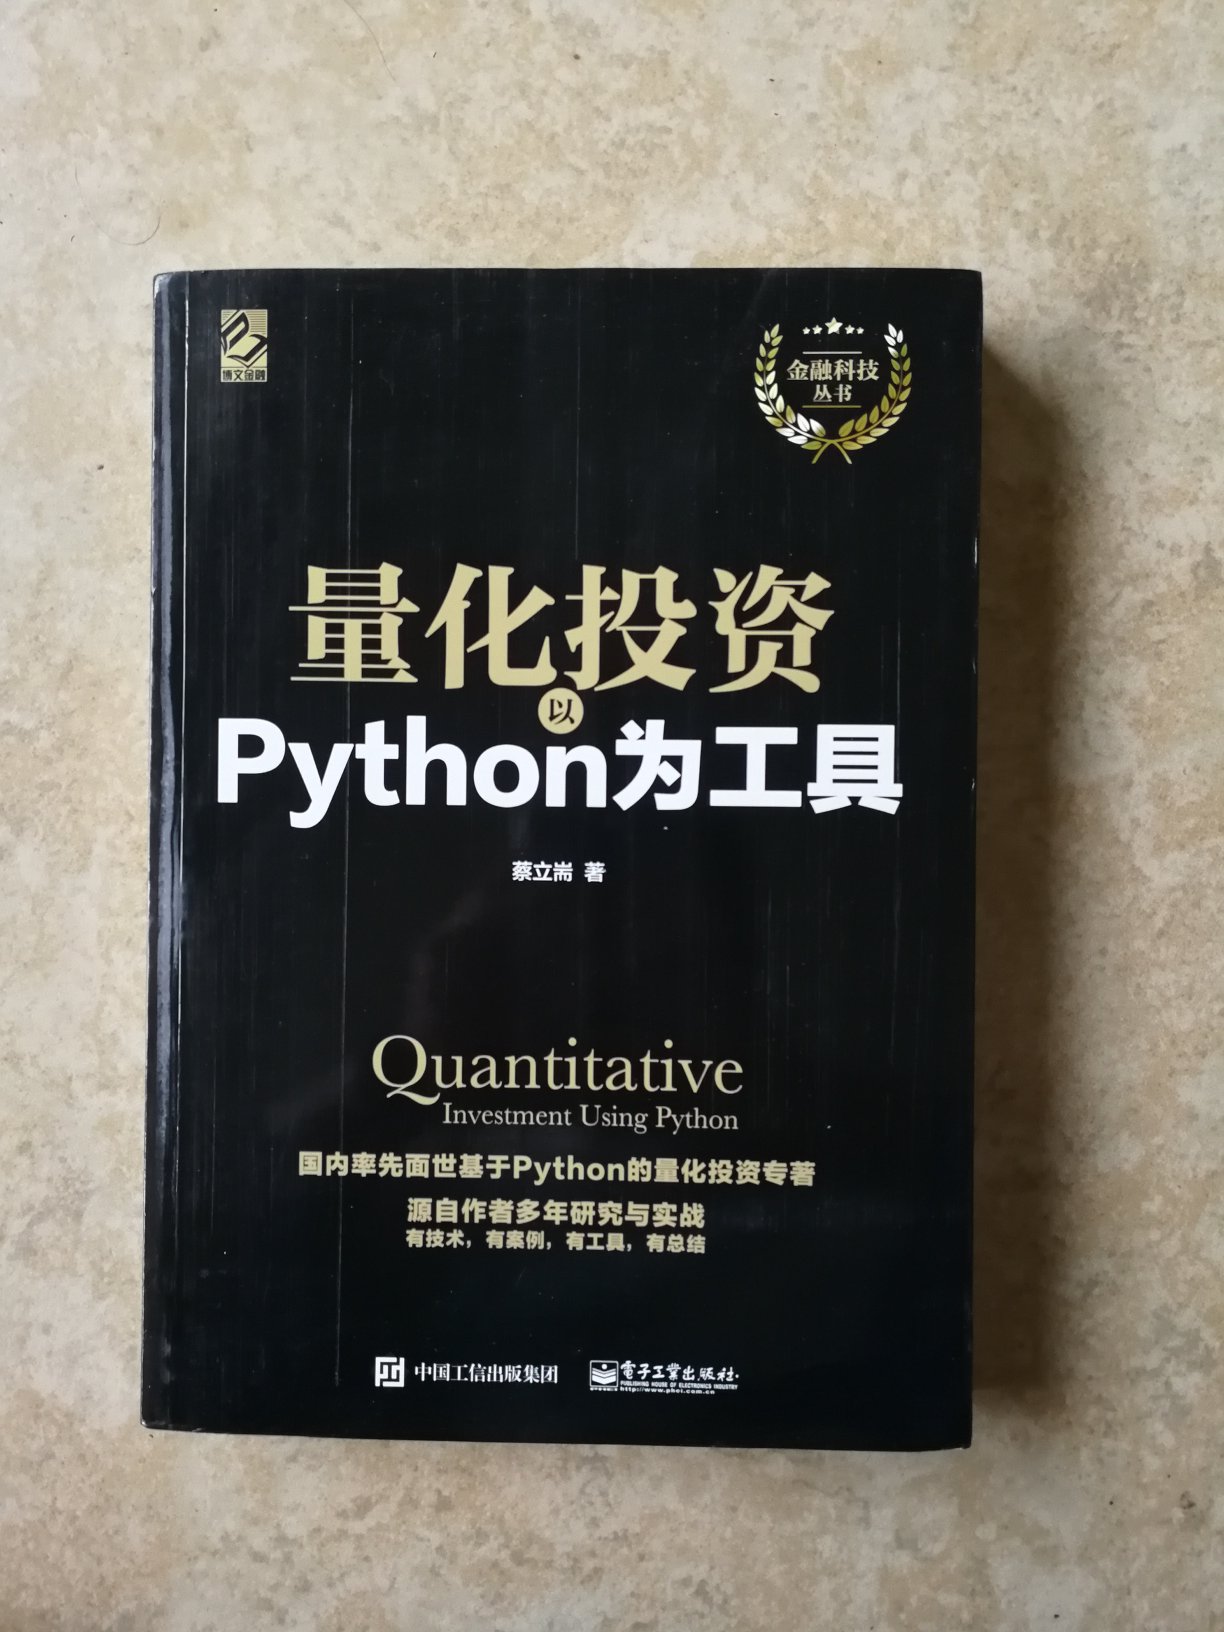 量化投资：以Python为工具 提供了许多实例 值得借鉴参考。